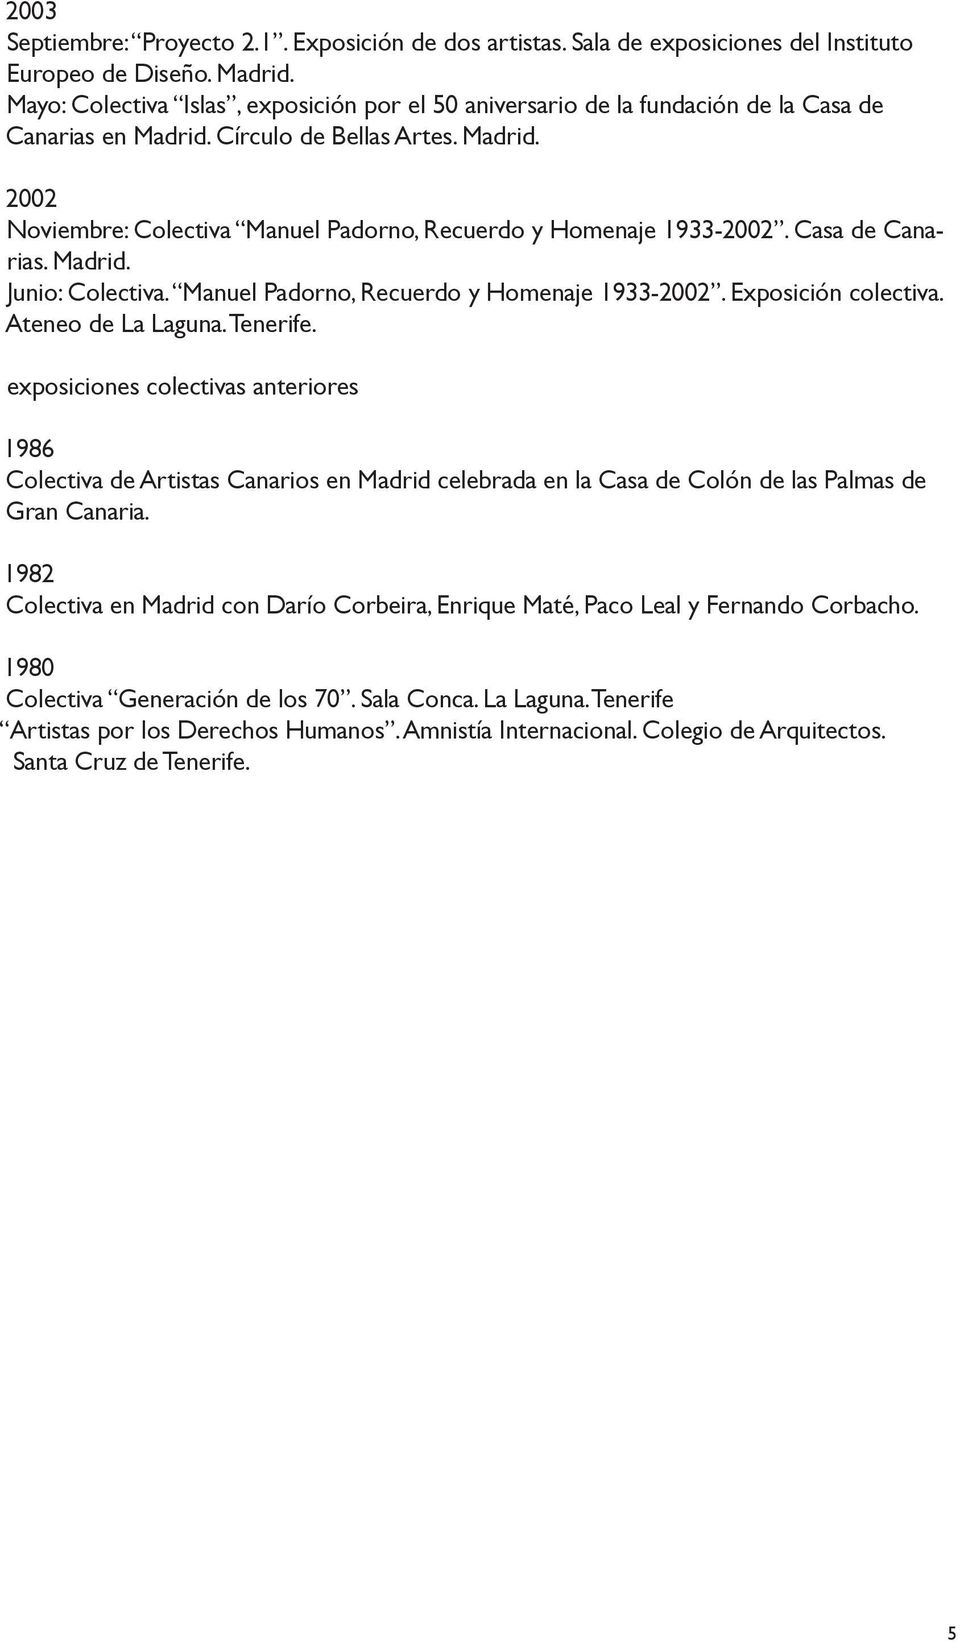 Casa de Canarias. Madrid. Junio: Colectiva. Manuel Padorno, Recuerdo y Homenaje 1933-2002. Exposición colectiva. Ateneo de La Laguna. Tenerife.